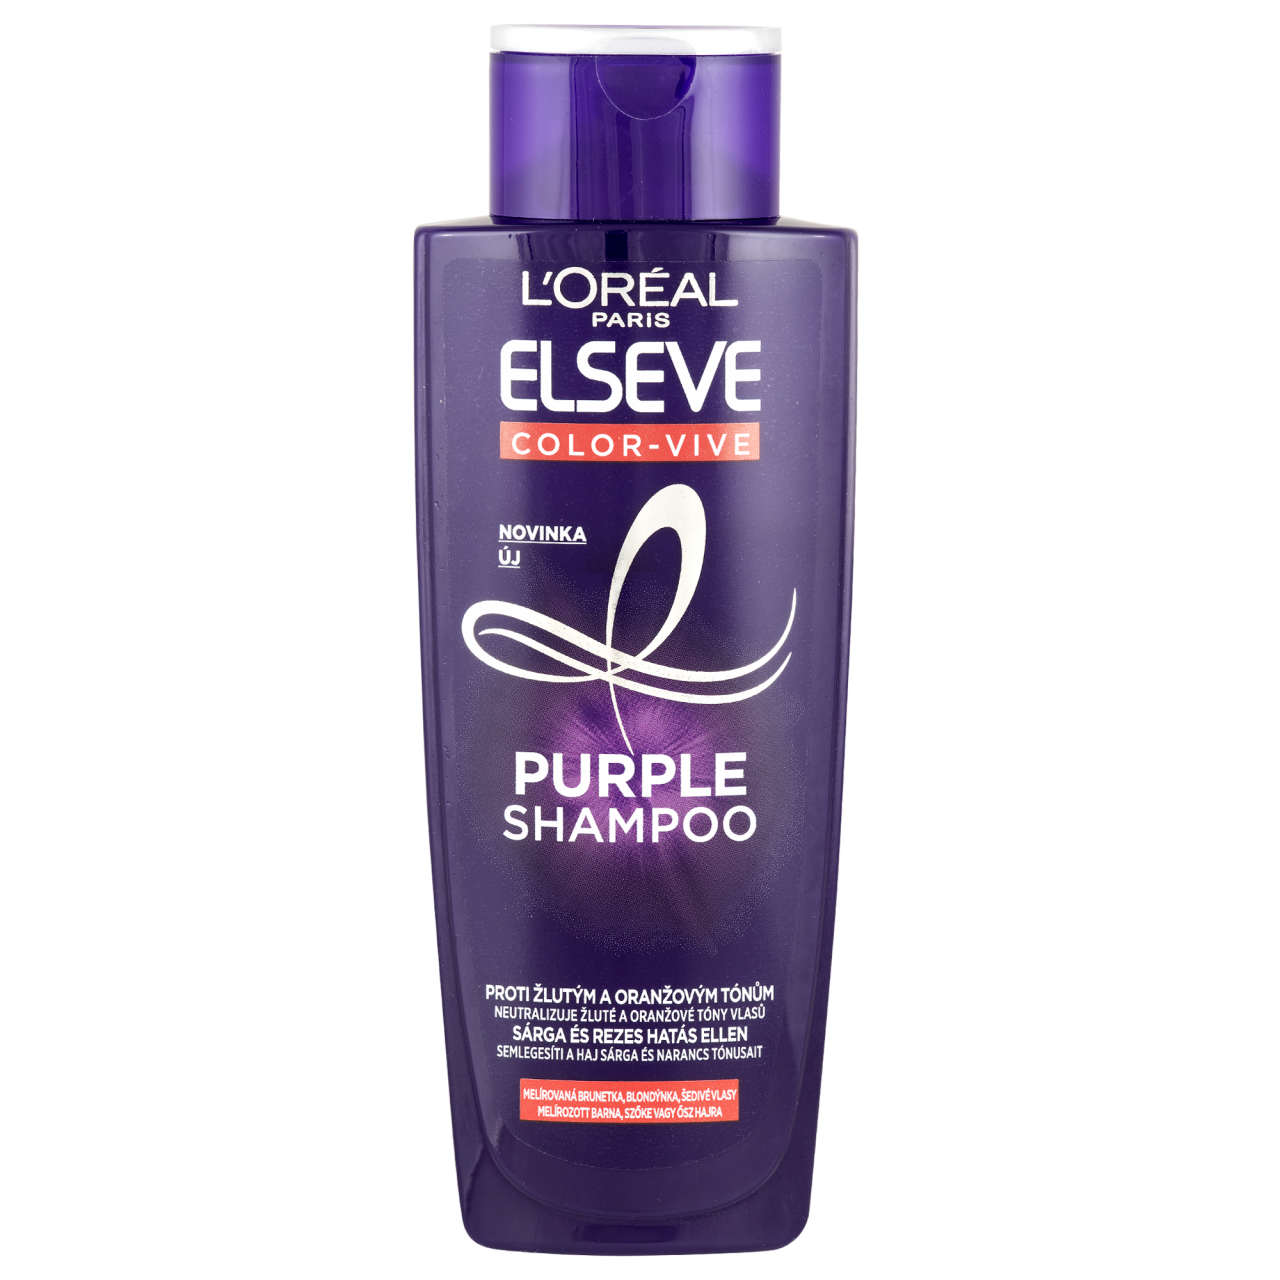 L'Oréal Paris Elséve Color-Vive Purple Shampoo